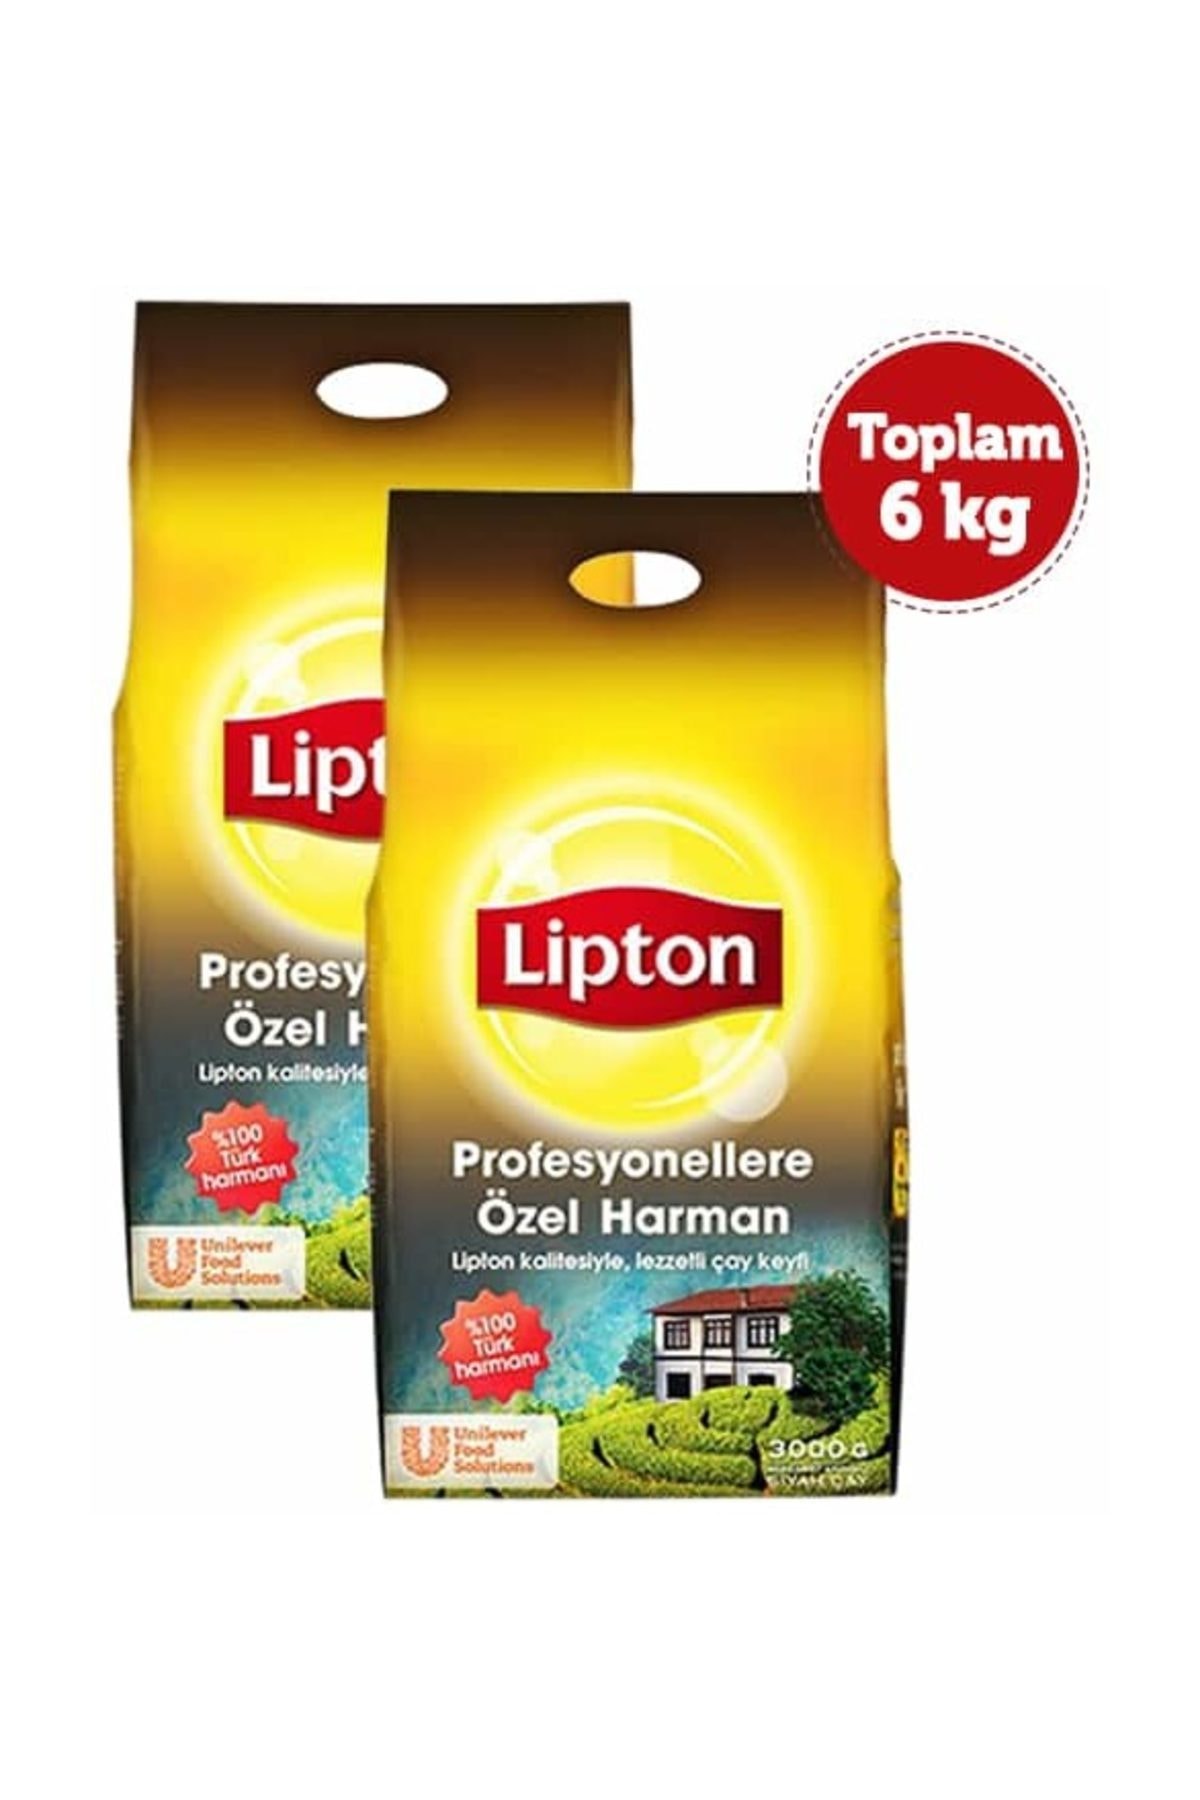 Lipton Lipton Profesyonellere Özel Harman Dökme Çay 3 kg x 2 Adet